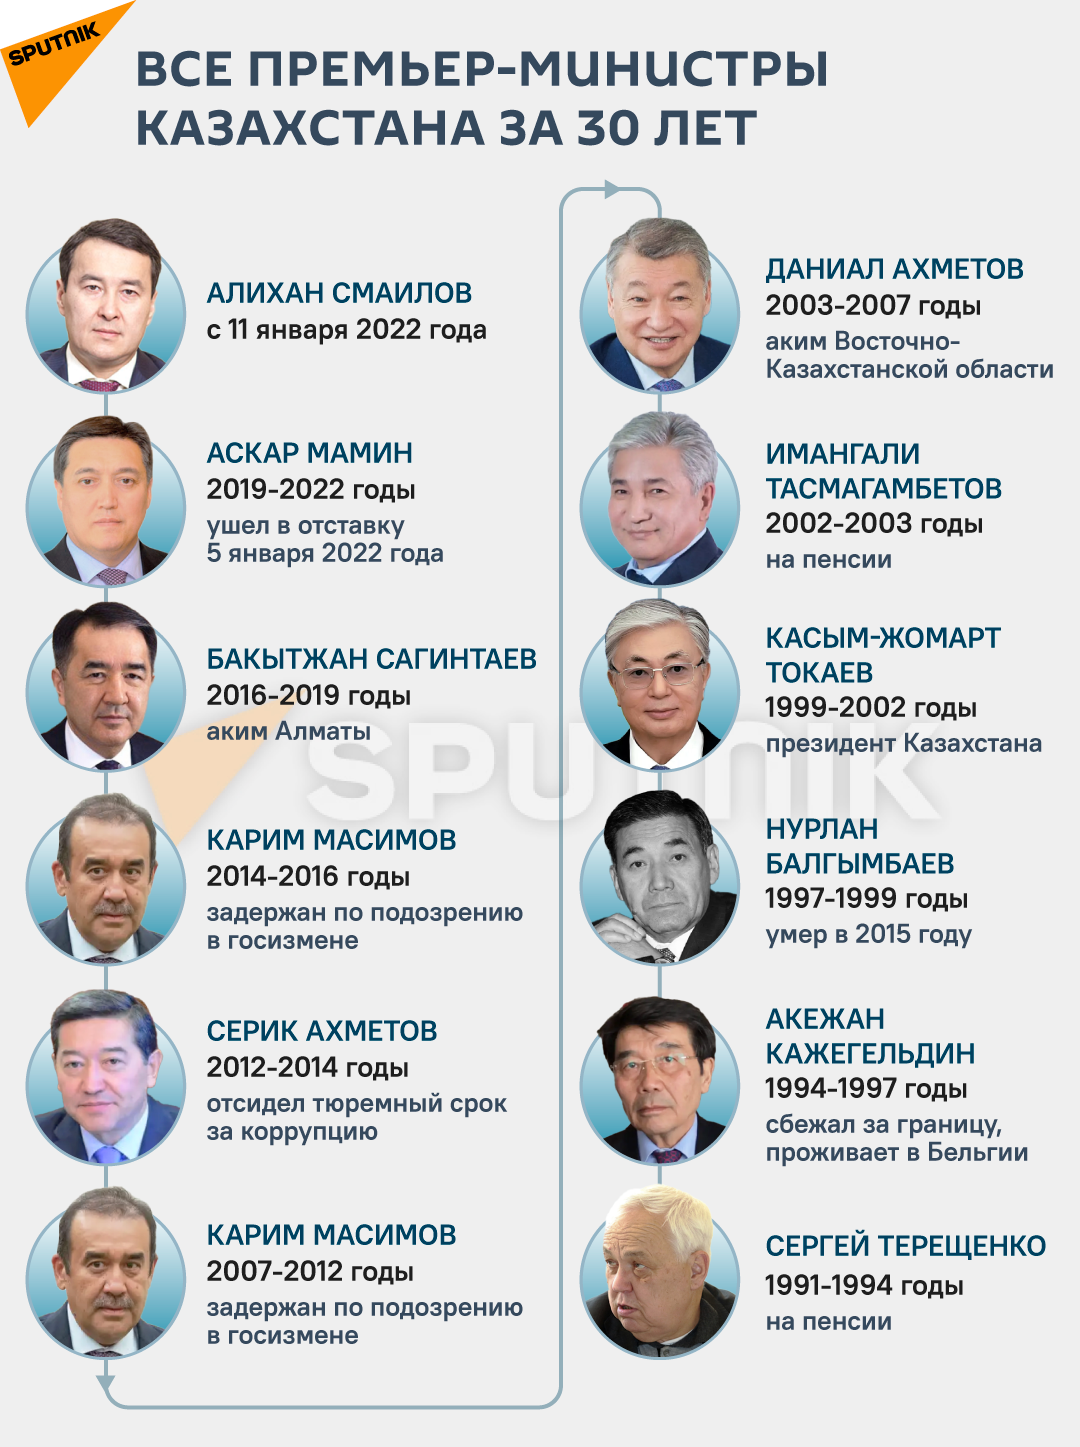 Қазақстанда 30 жыл ішінде премьер-министр болғандар